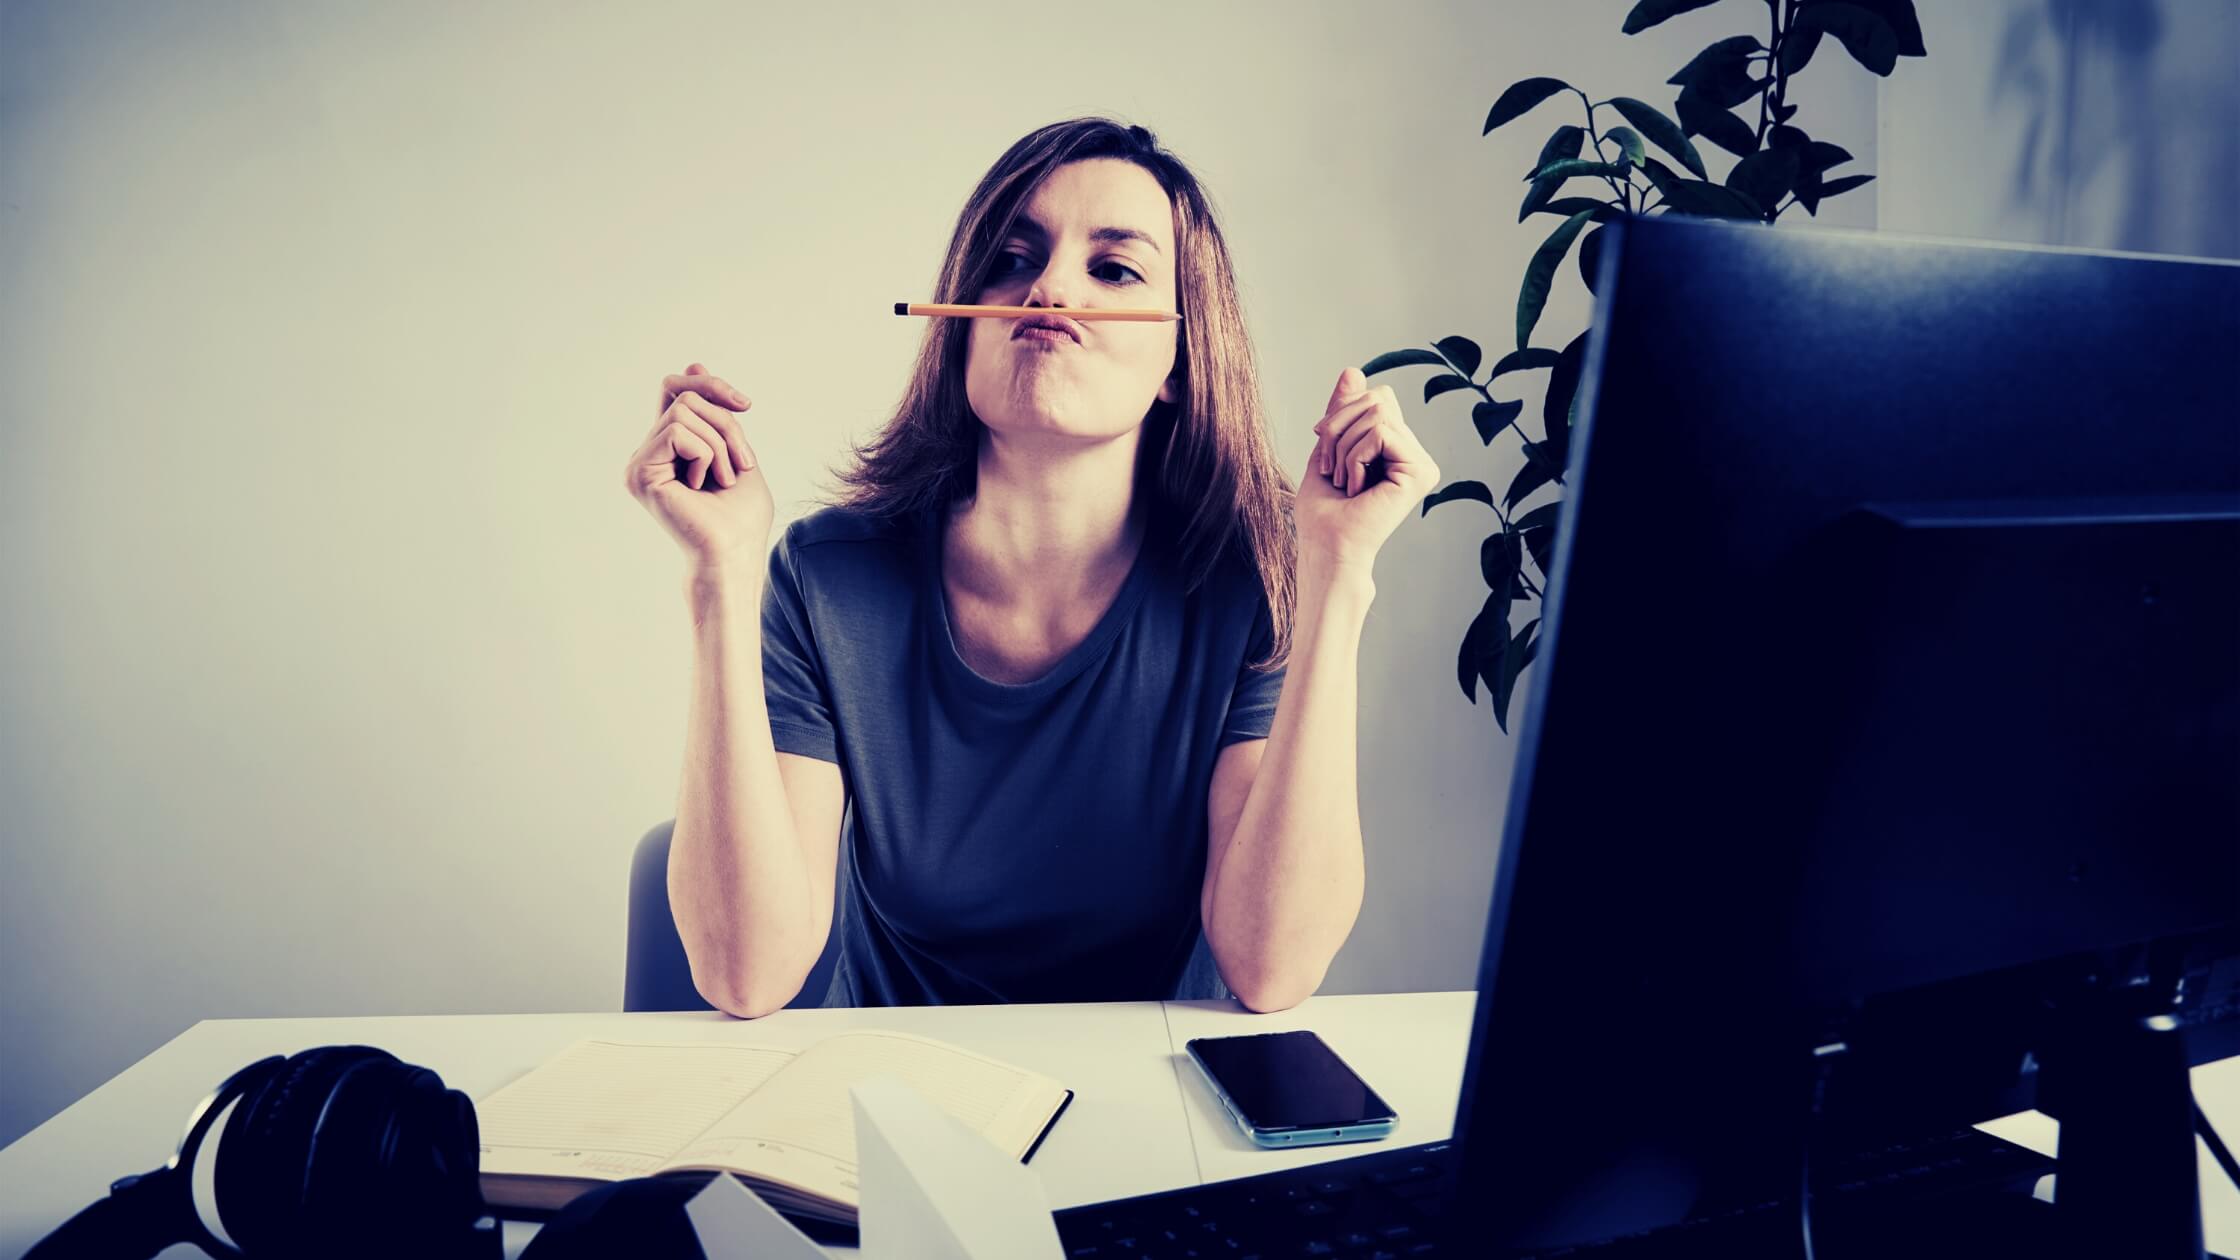 Mujer joven, trabajando de forma remota en su oficina distraída jugando con un lapiz en su boca